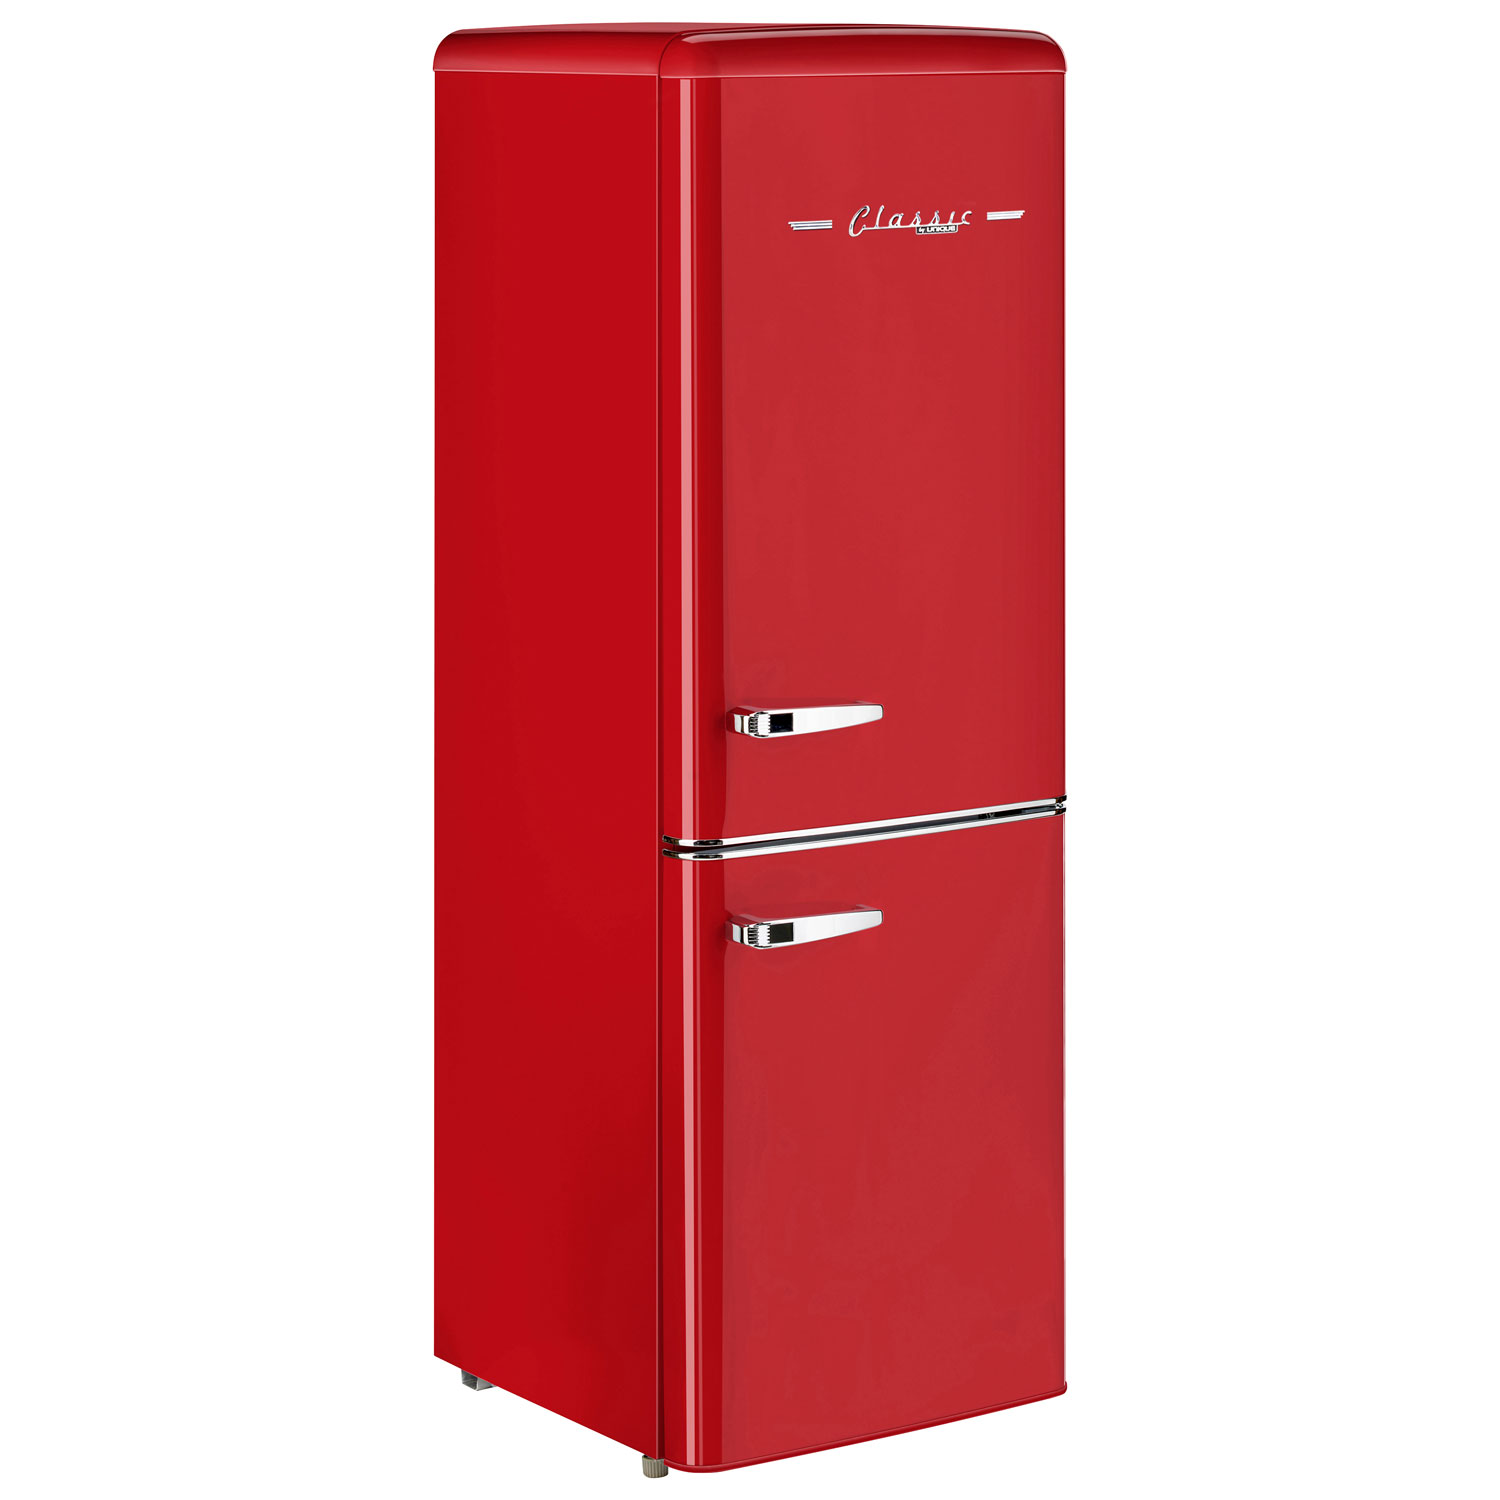 Red Bull pompe réfrigérateur pompe originale rareté pour collectionneurs